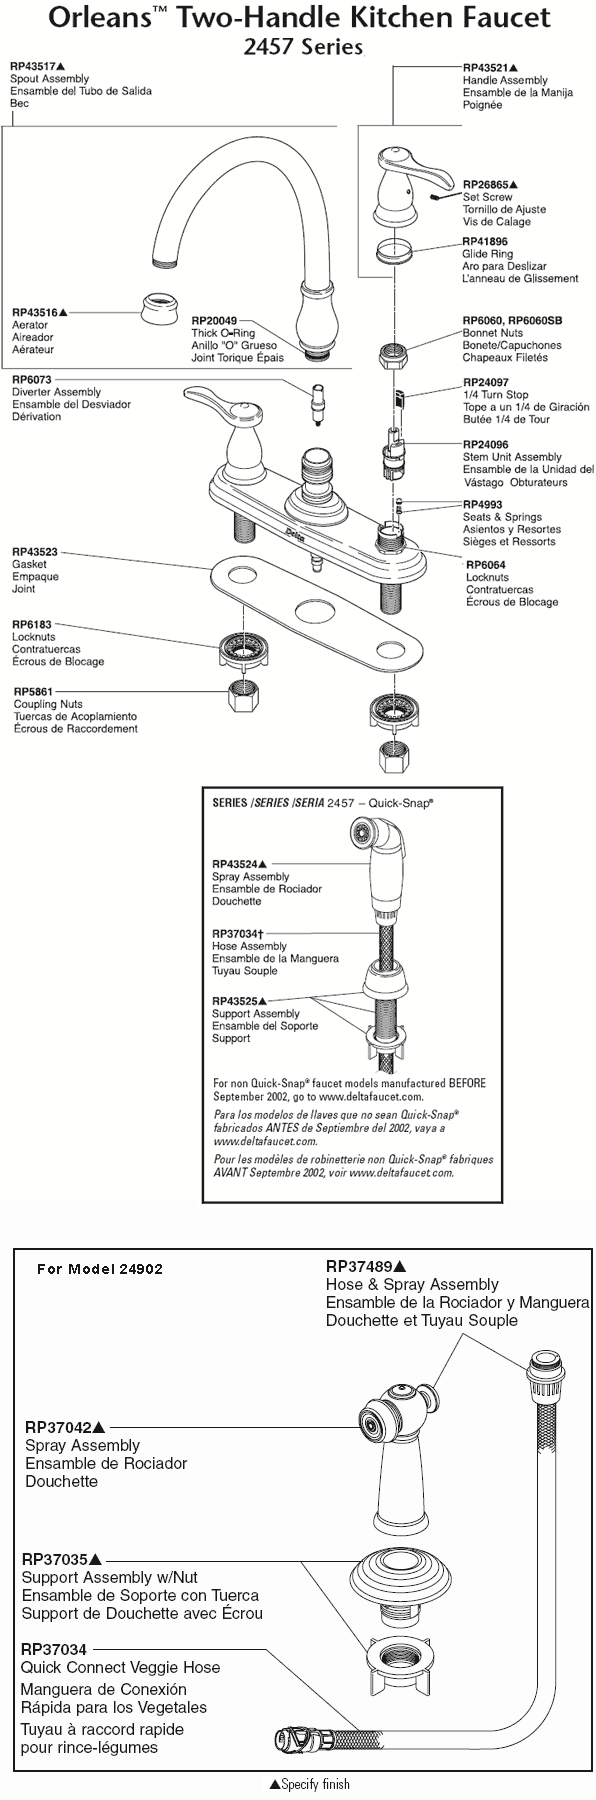 Orleans Two Handle Faucet Parts Diagram Model 2457